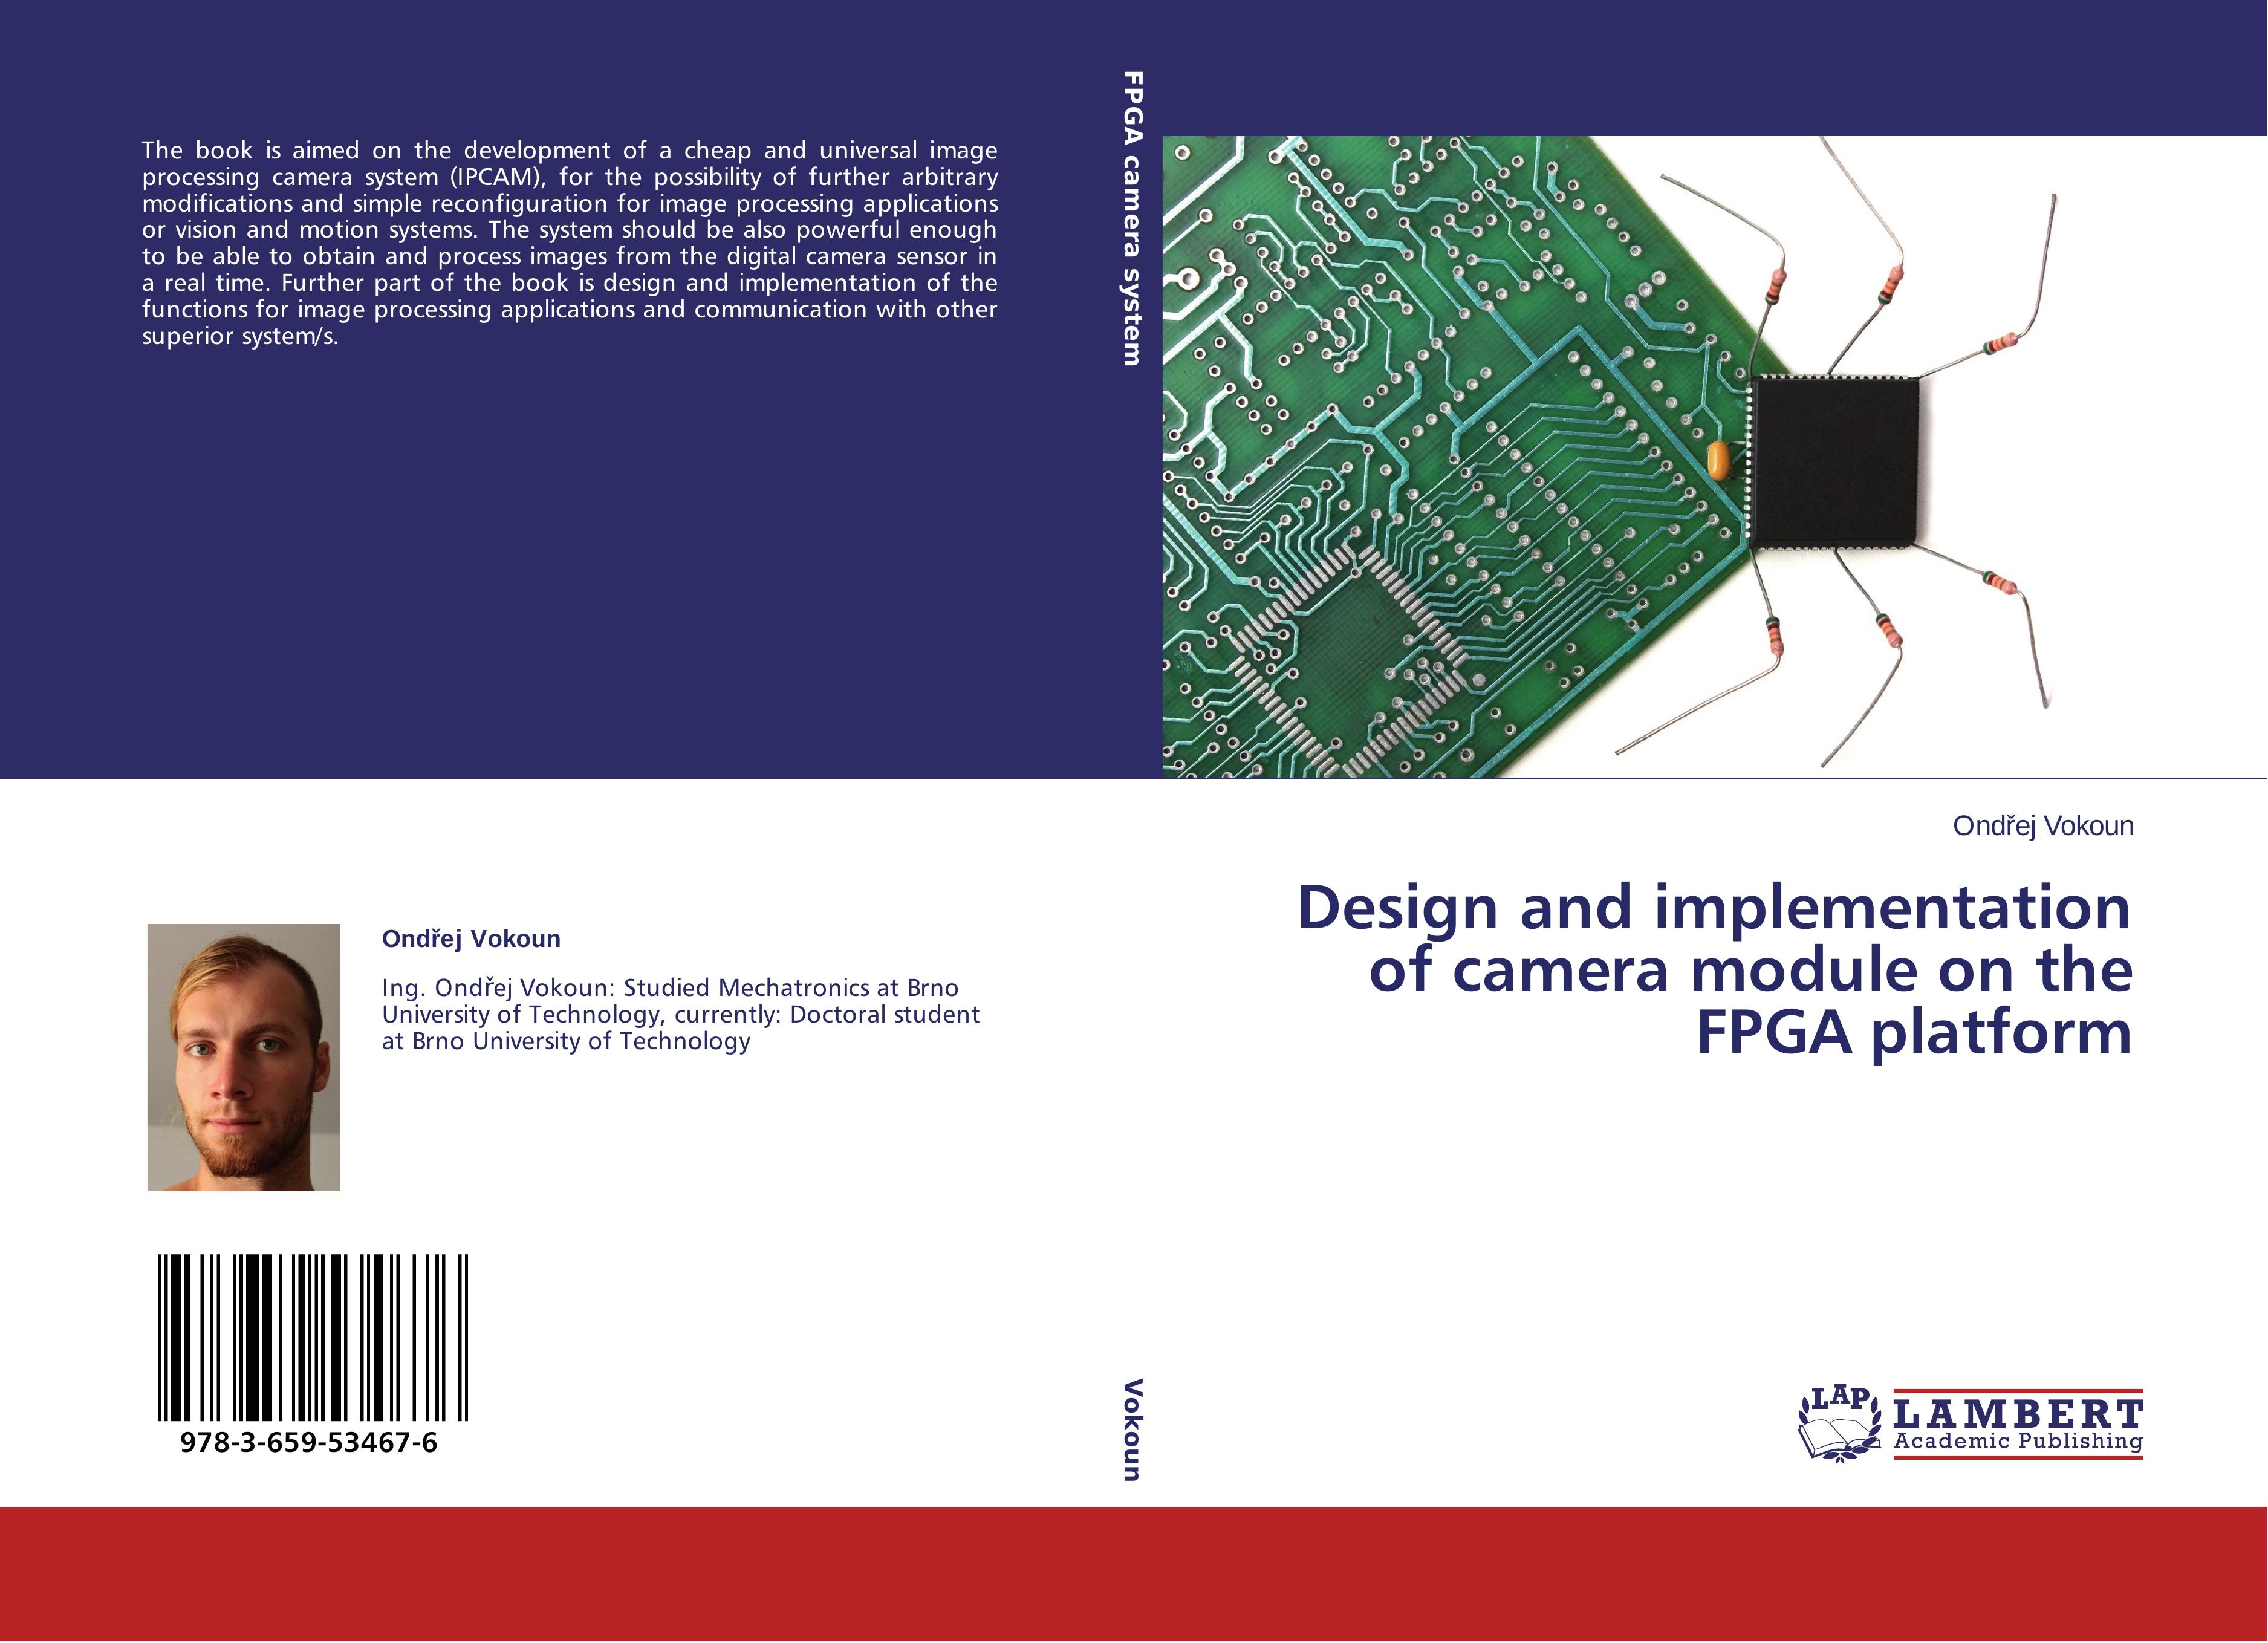 Design and implementation of camera module on the FPGA platform - Ondrej Vokoun